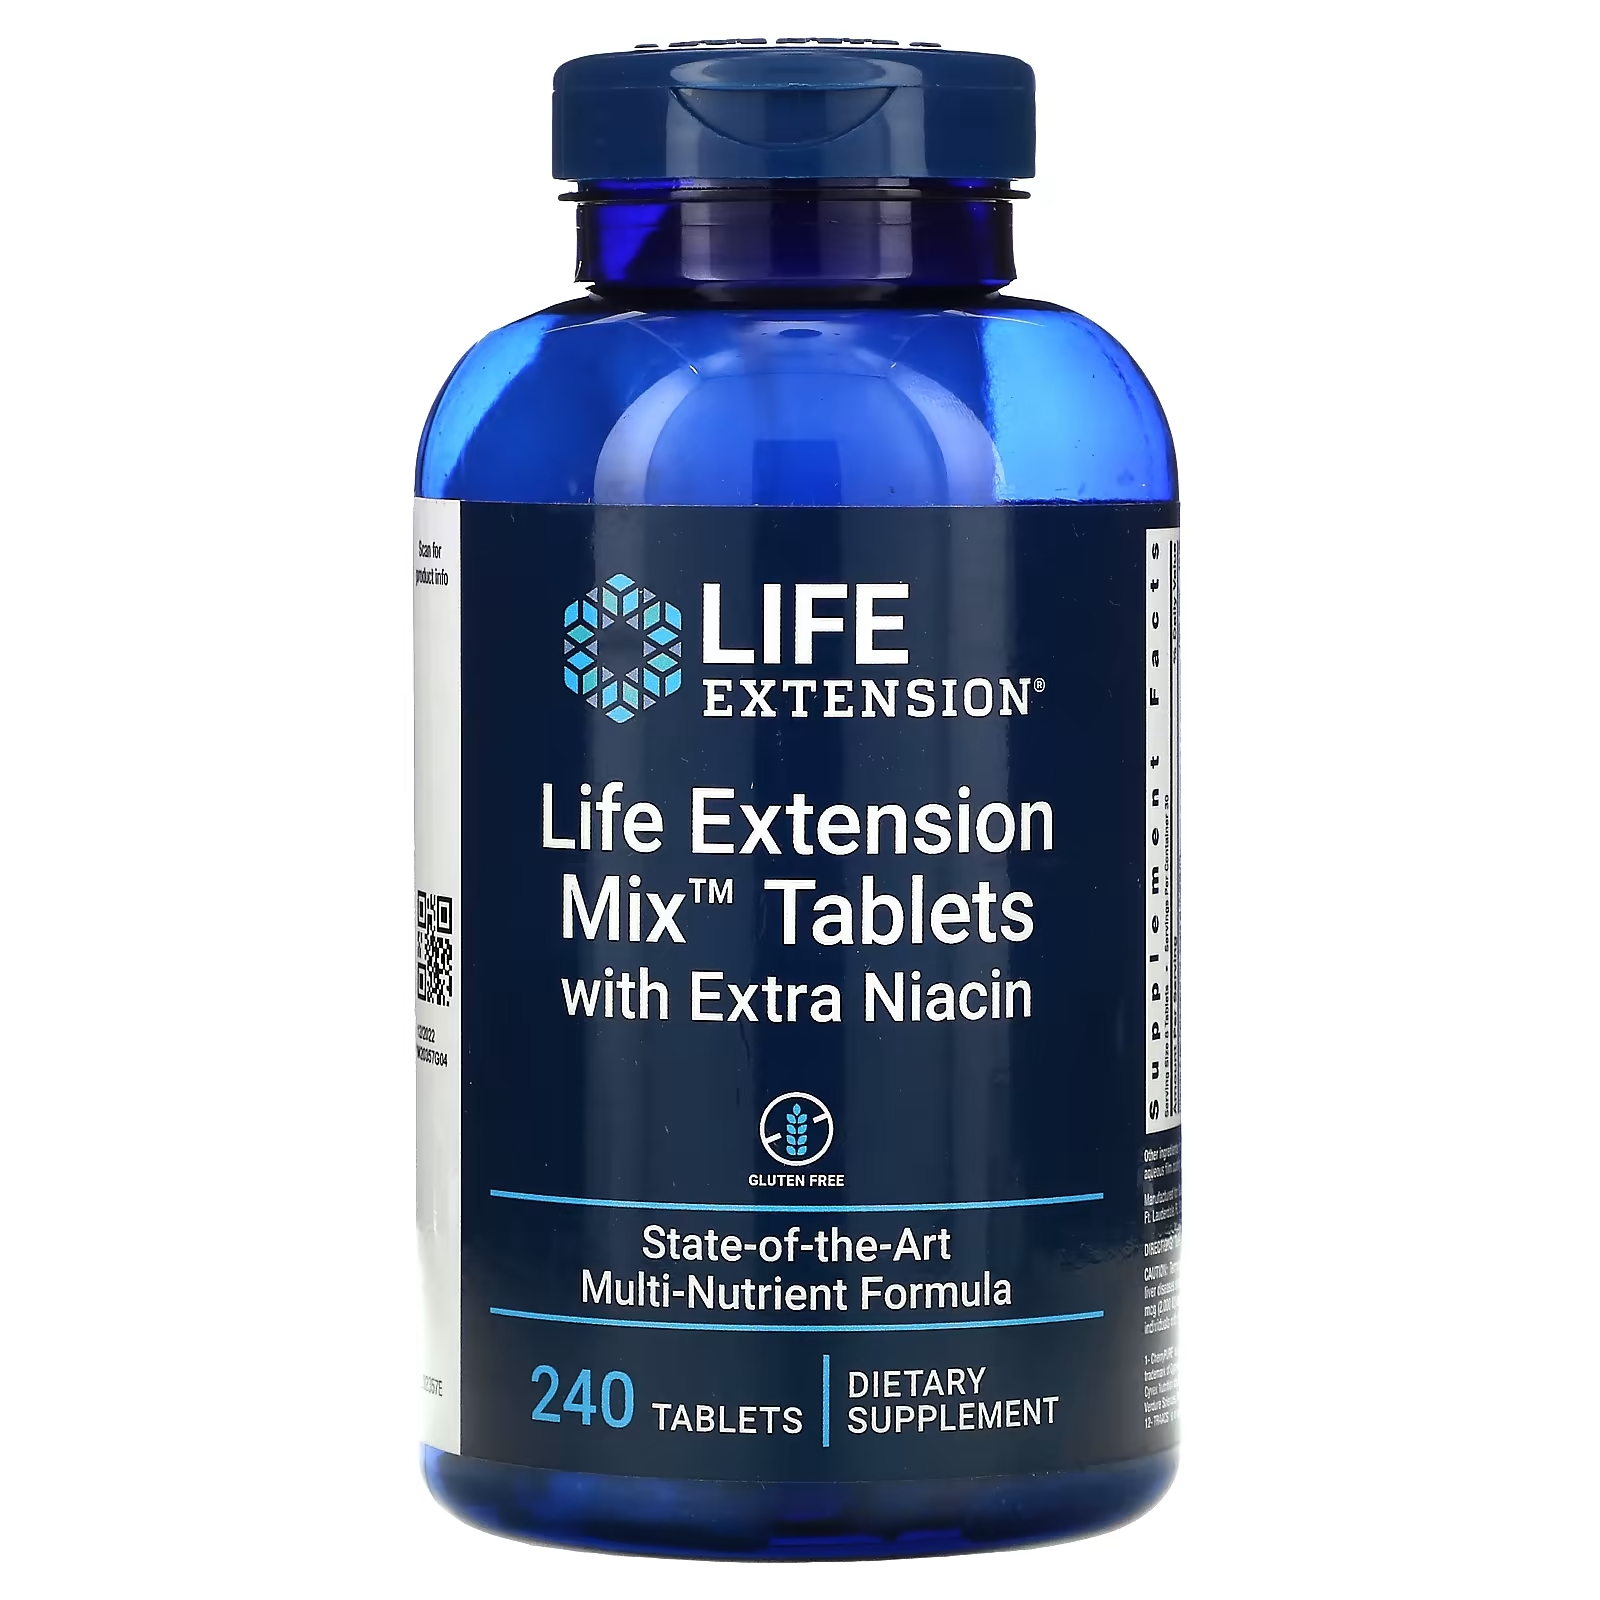 Таблетки с Дополнительным Ниацином Life Extension Mix, 240 таблеток пищевая добавка life extension mix tablets 240 таблеток